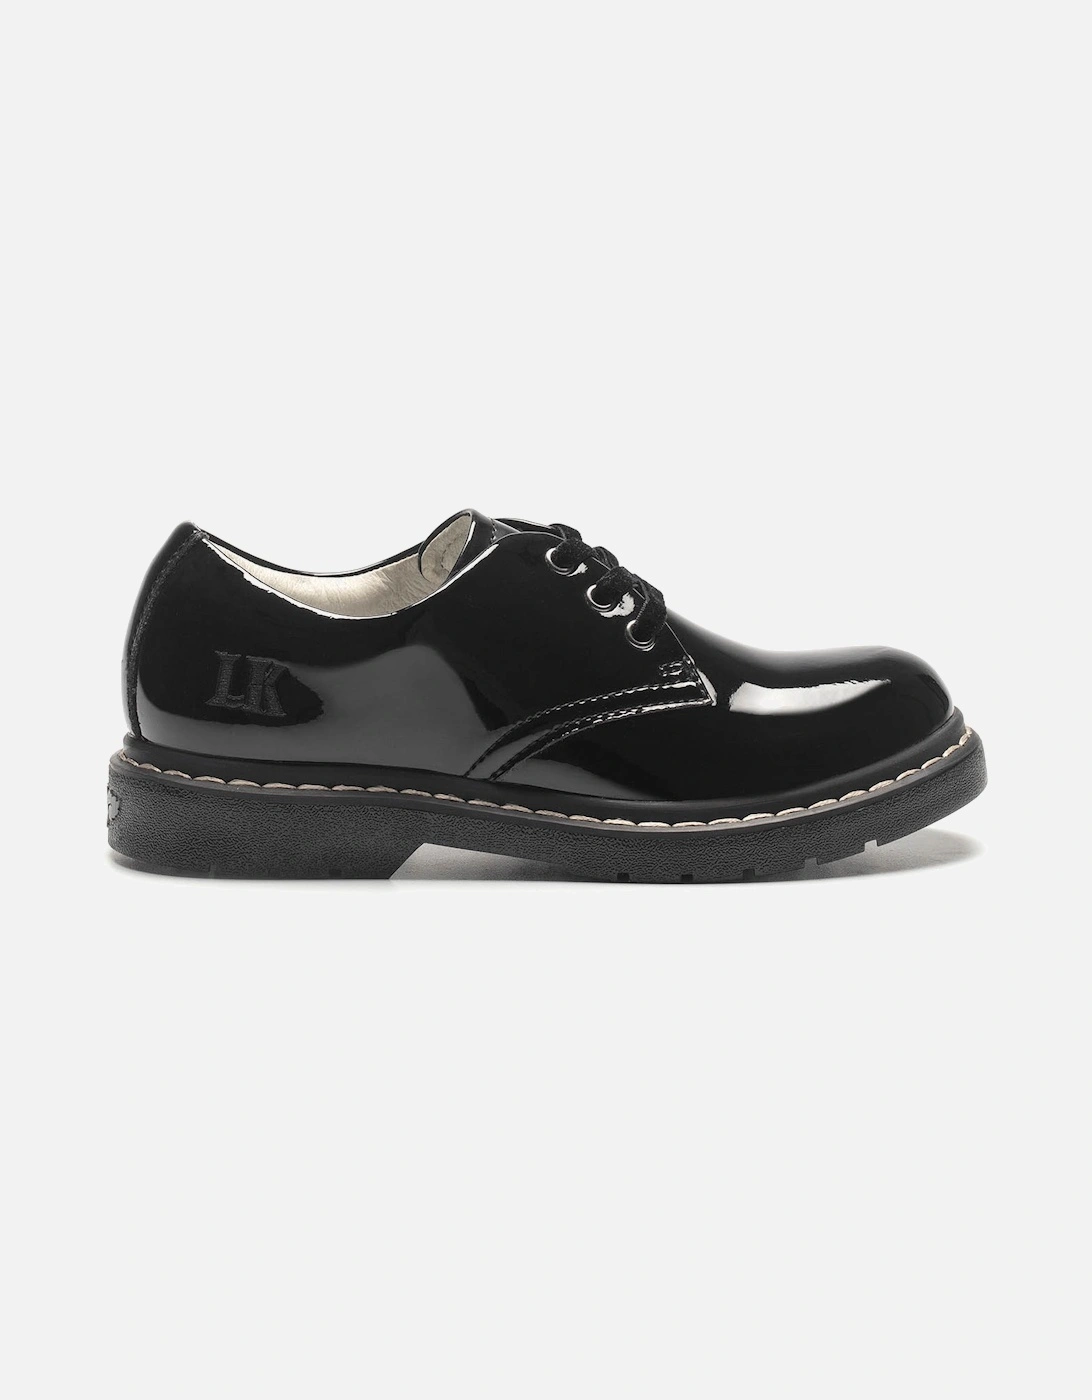 Juniors Rochelle Patent Shoes (Black)